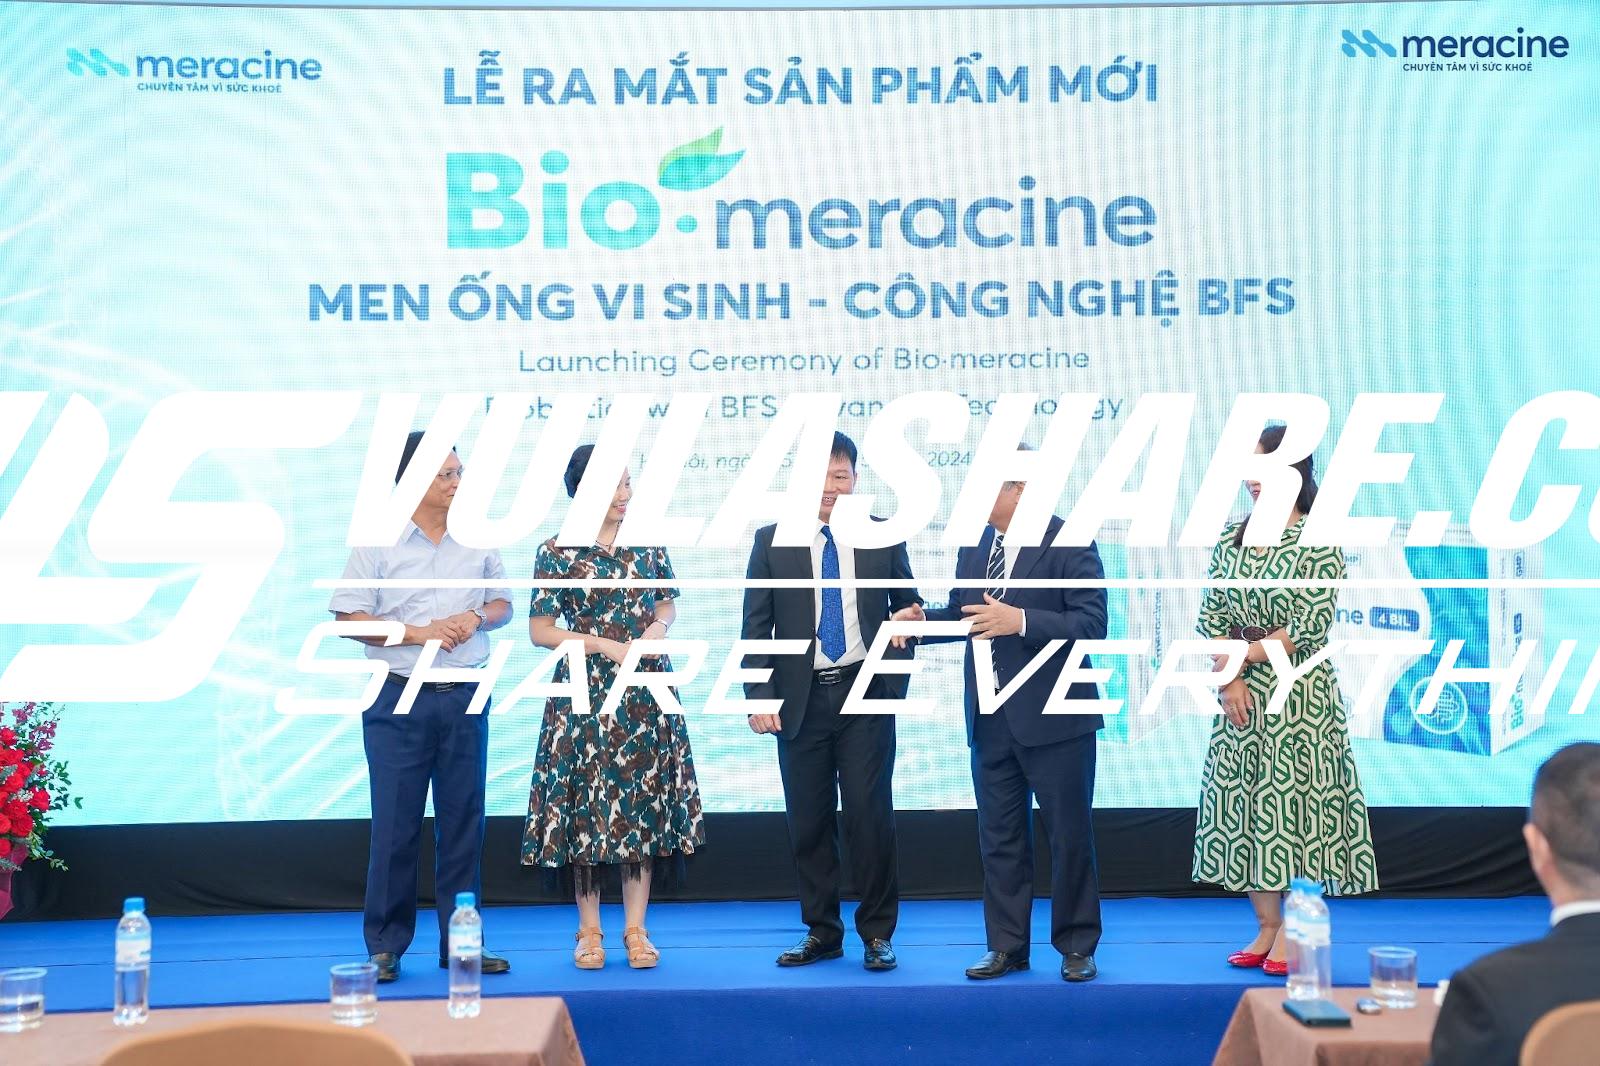 Dược phẩm Meracine ra mắt sản phẩm men ống vi sinh mới ứng dụng công nghệ BFS- Ảnh 1.